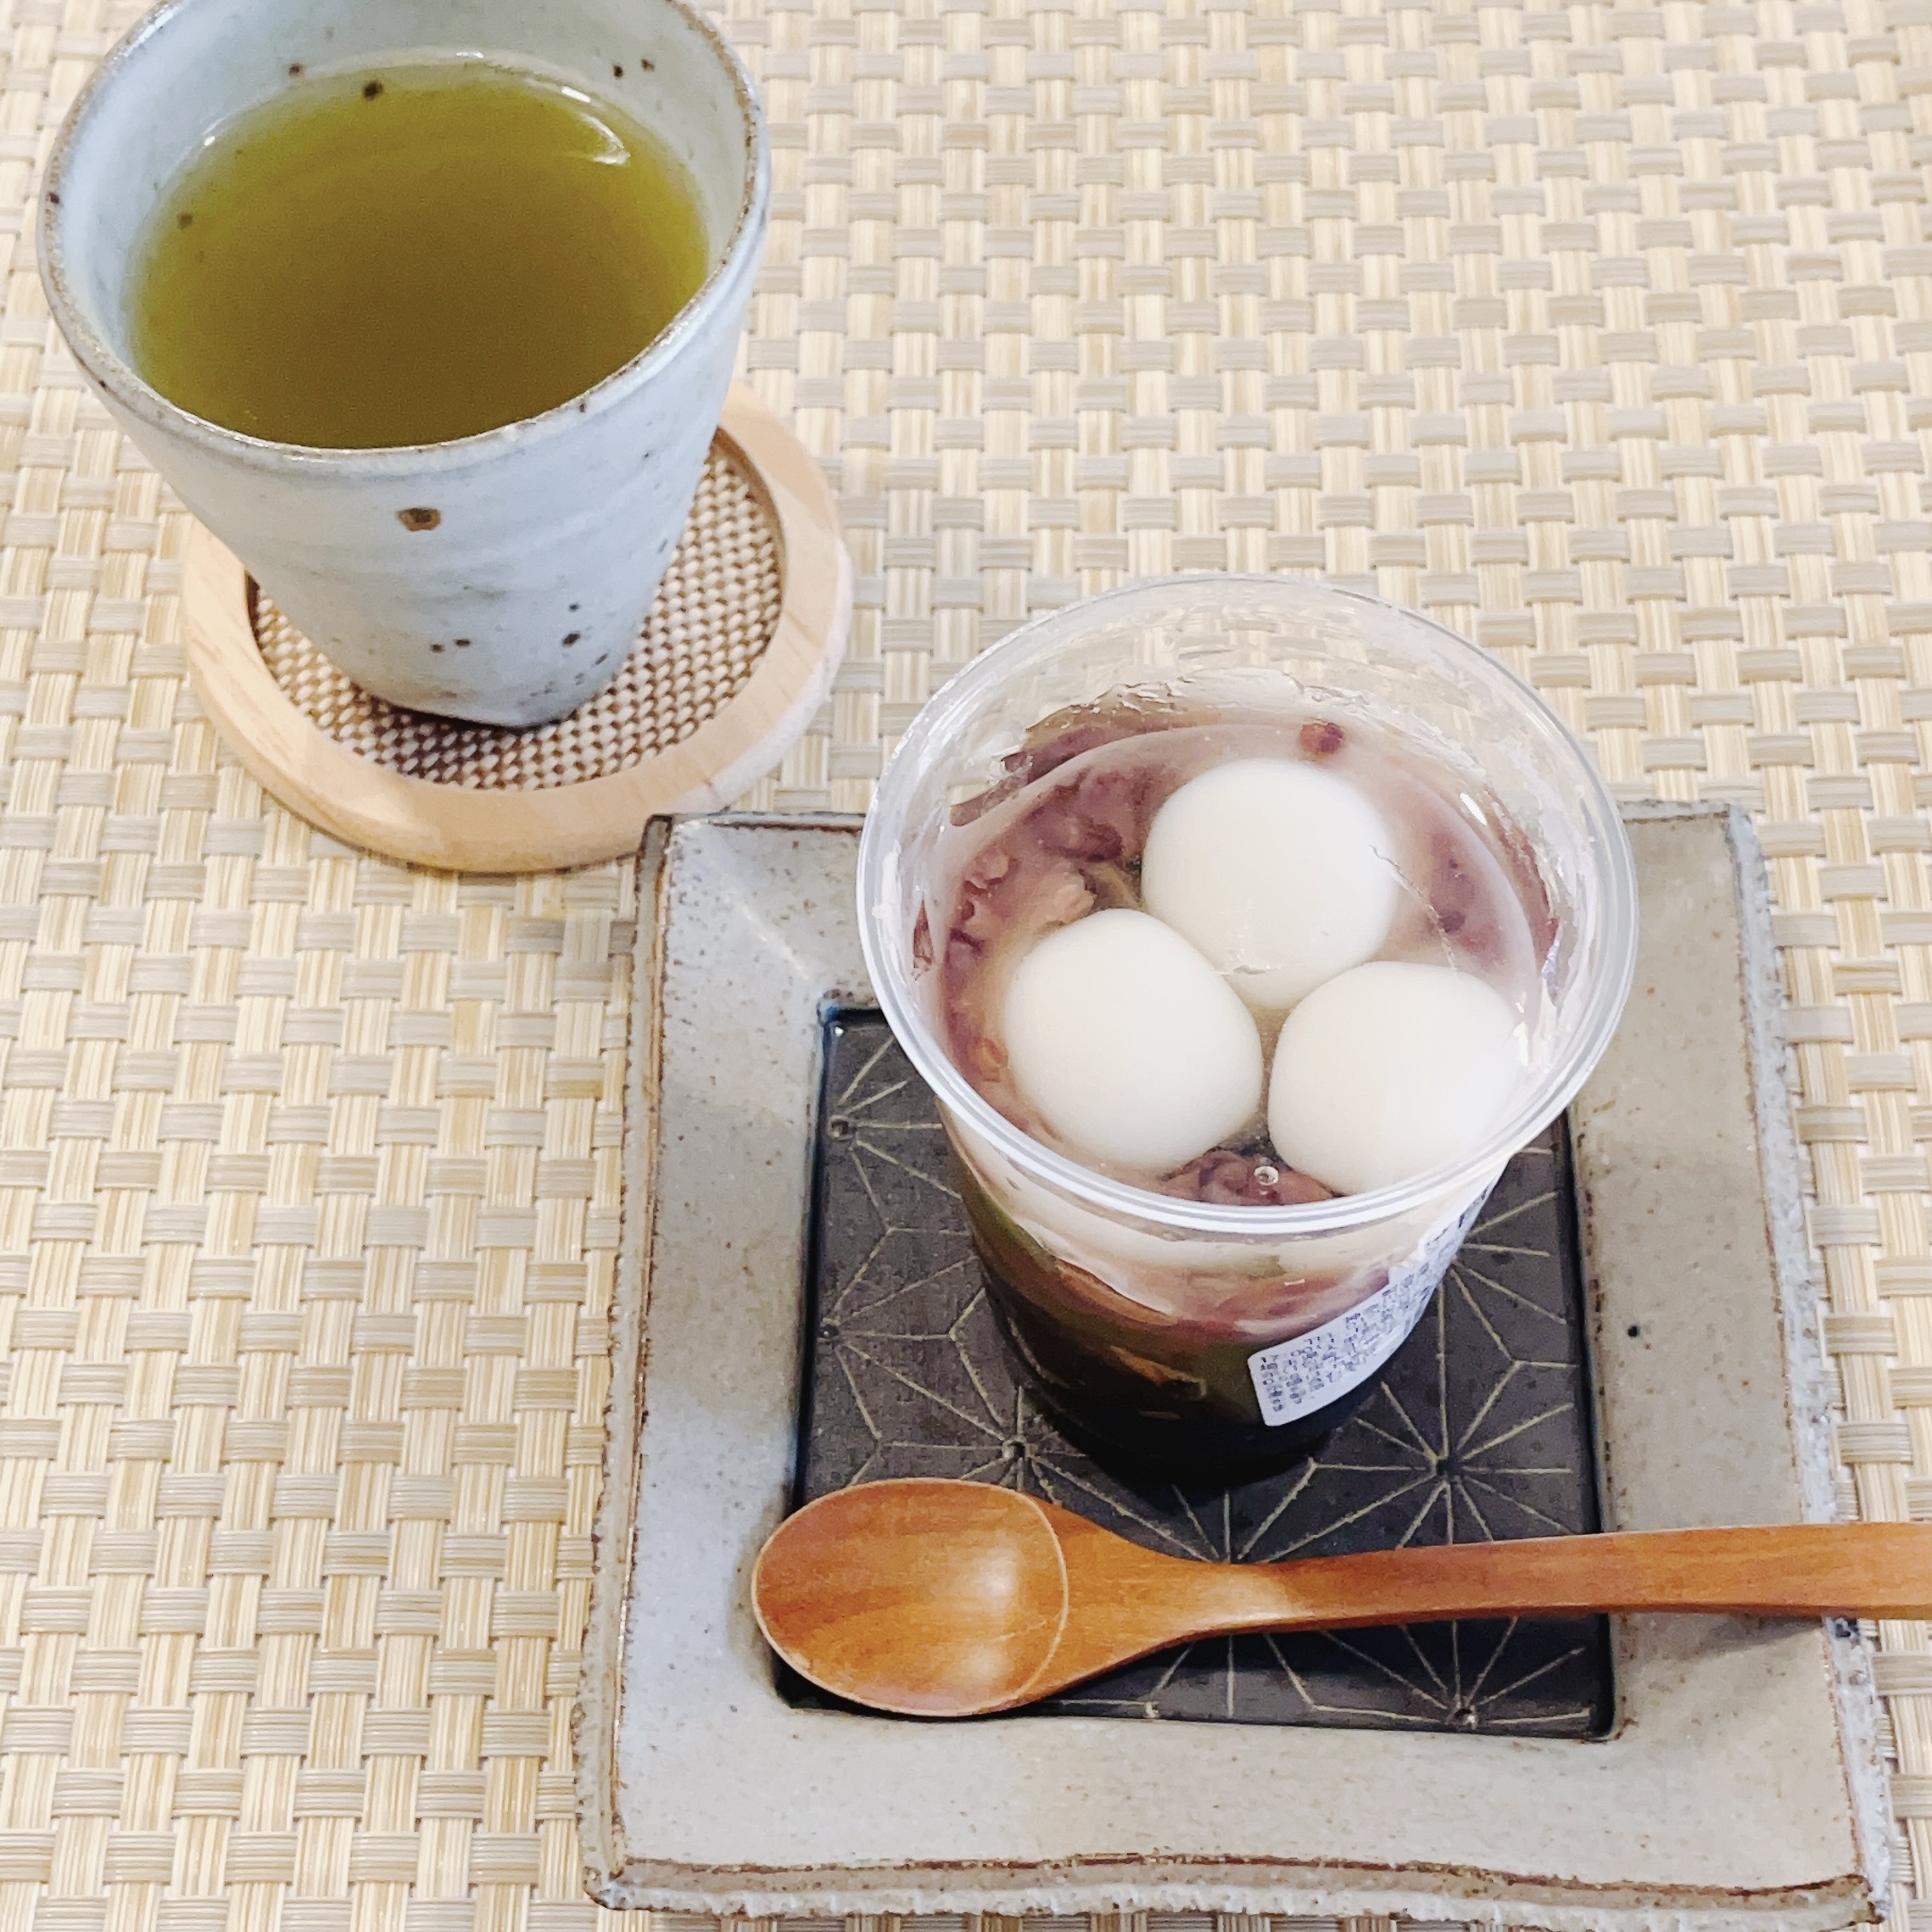 成城石井のオススメのデザート「抹茶と黒蜜の和風ゼリー」